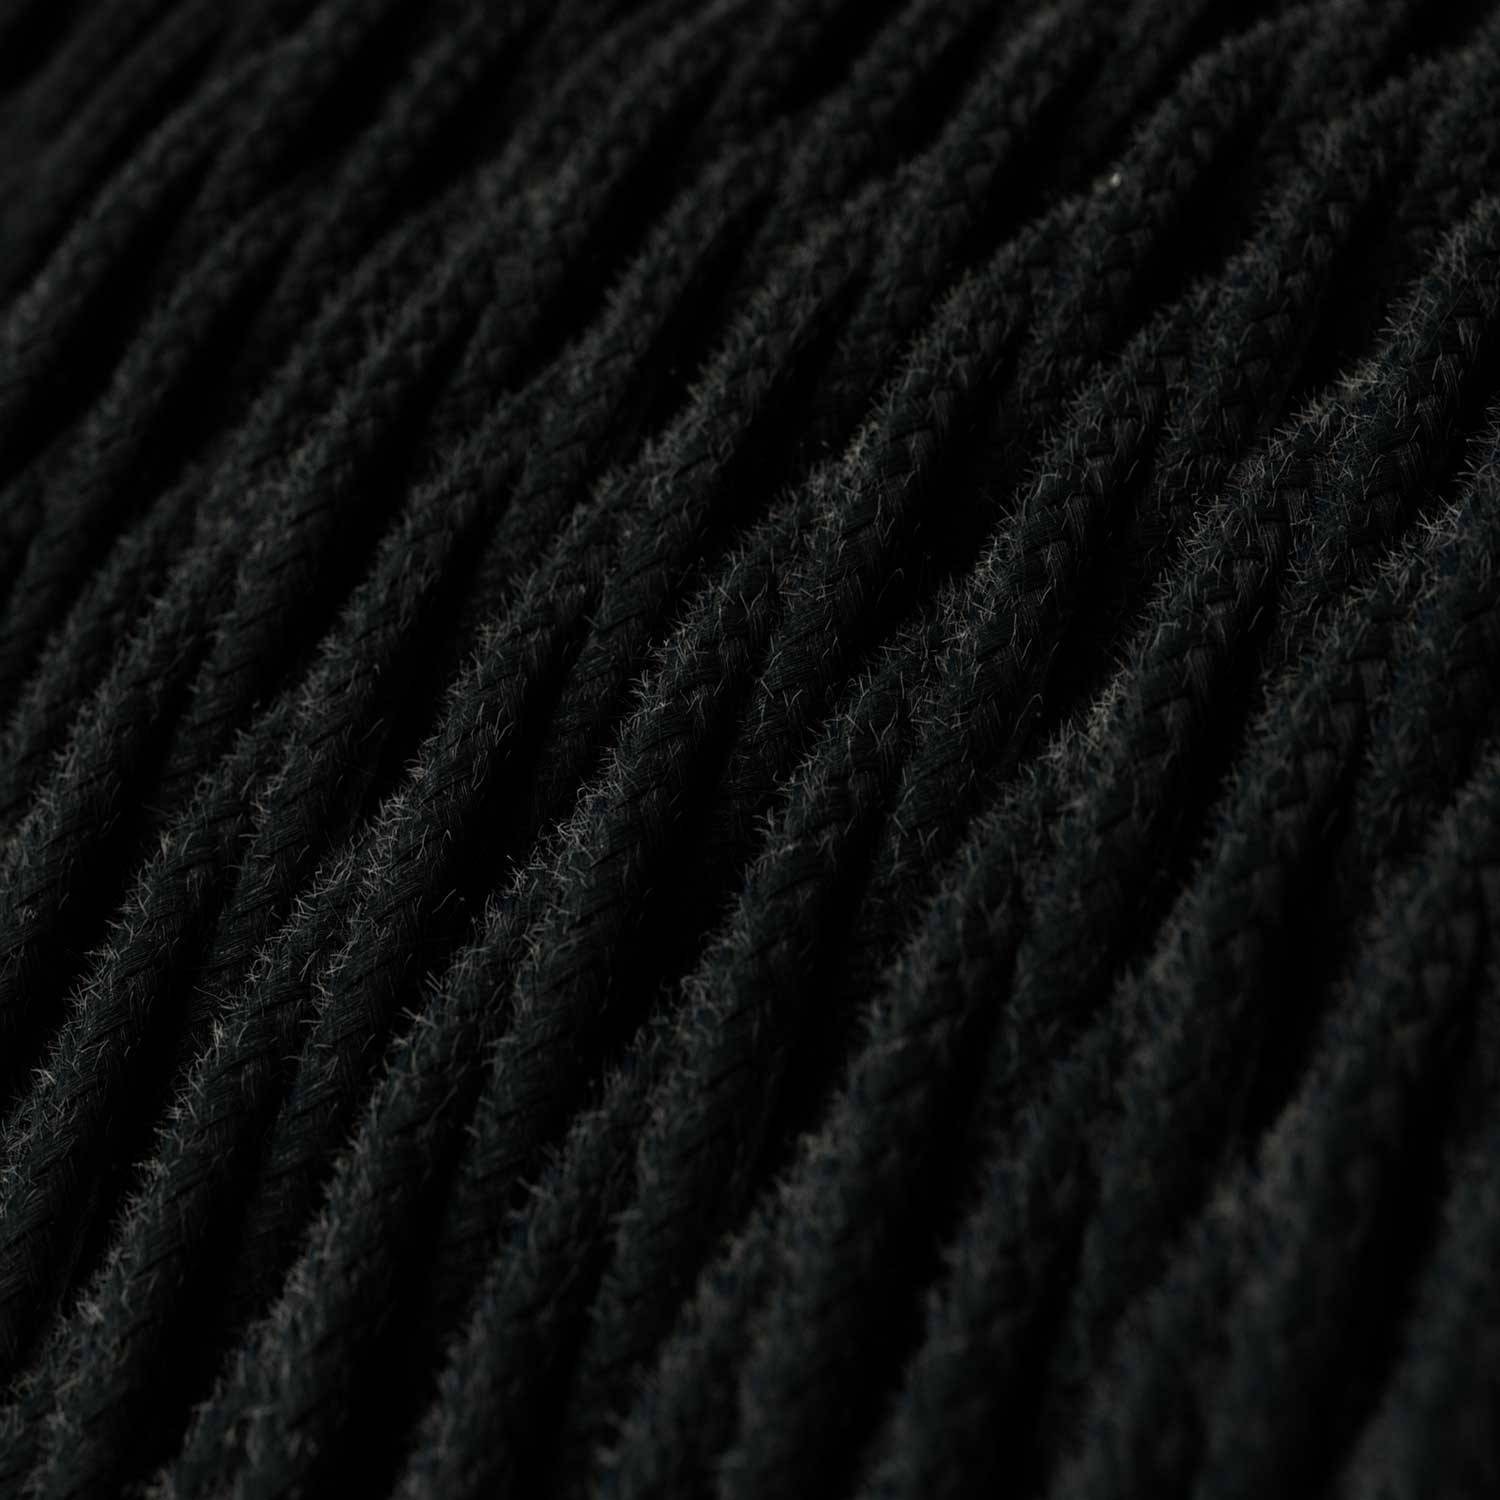 Splétaný bavlněný textilní elektrický kabel, TC04 Černý